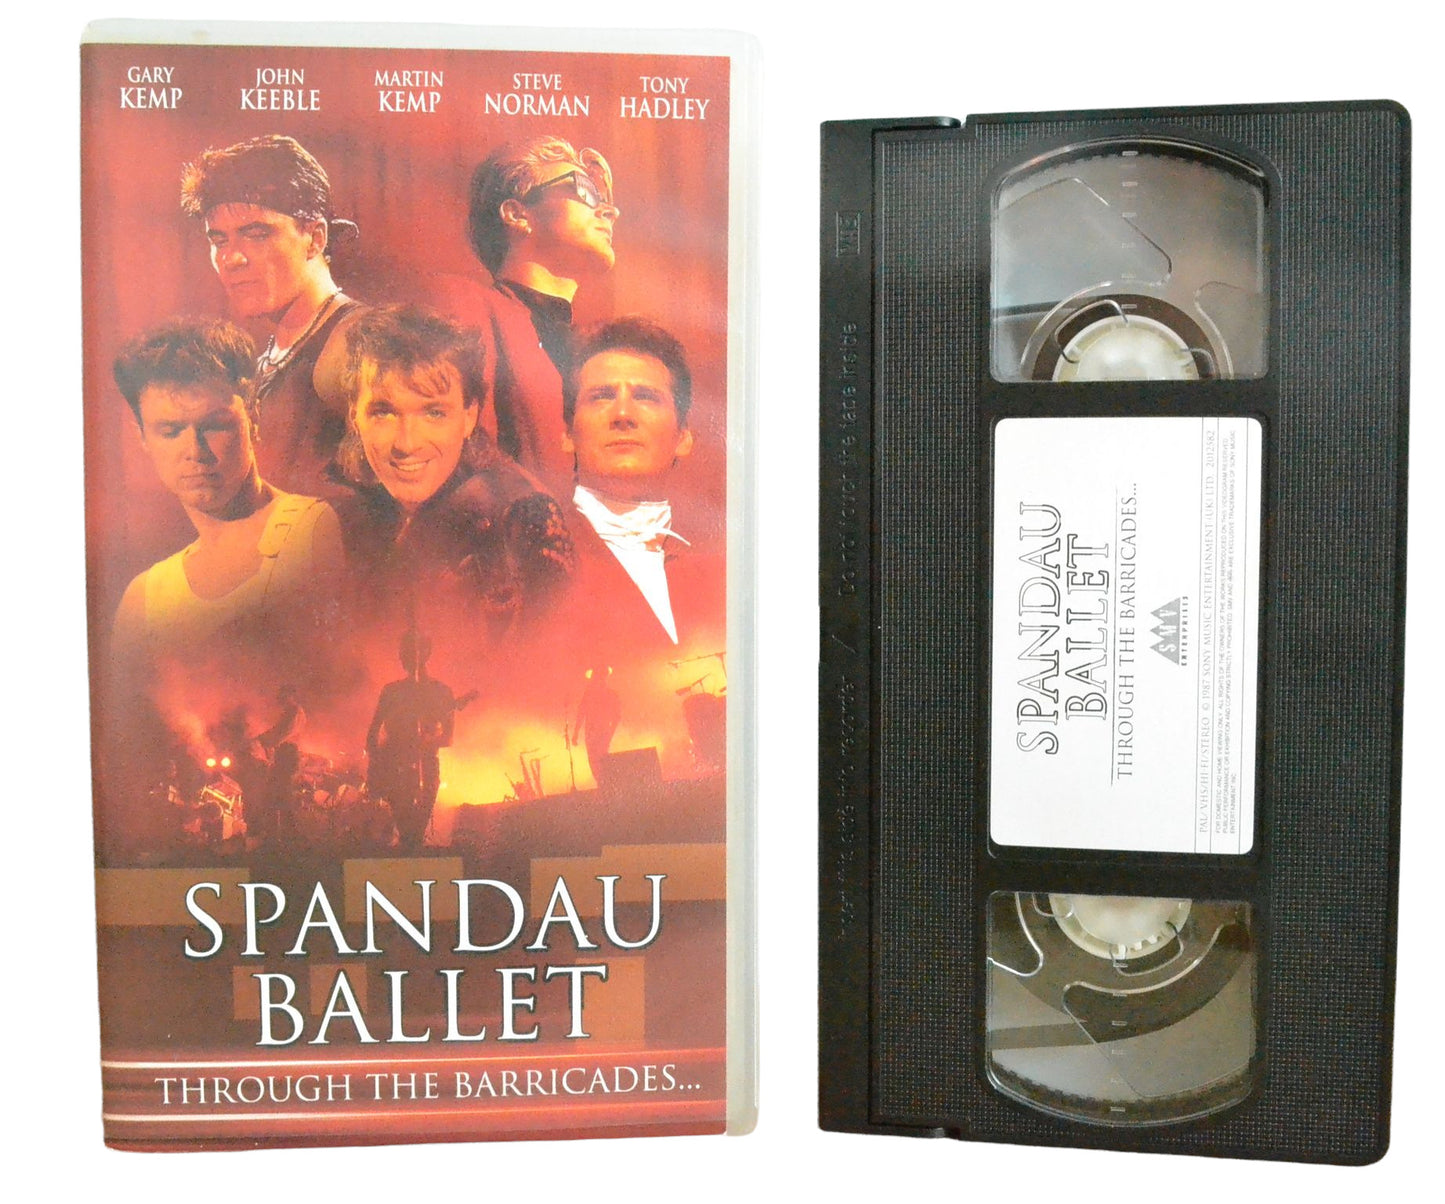 Spandau Ballet - Through The Barricades - Gary Kemp - SMV Enterprises - Musical - Pal VHS-